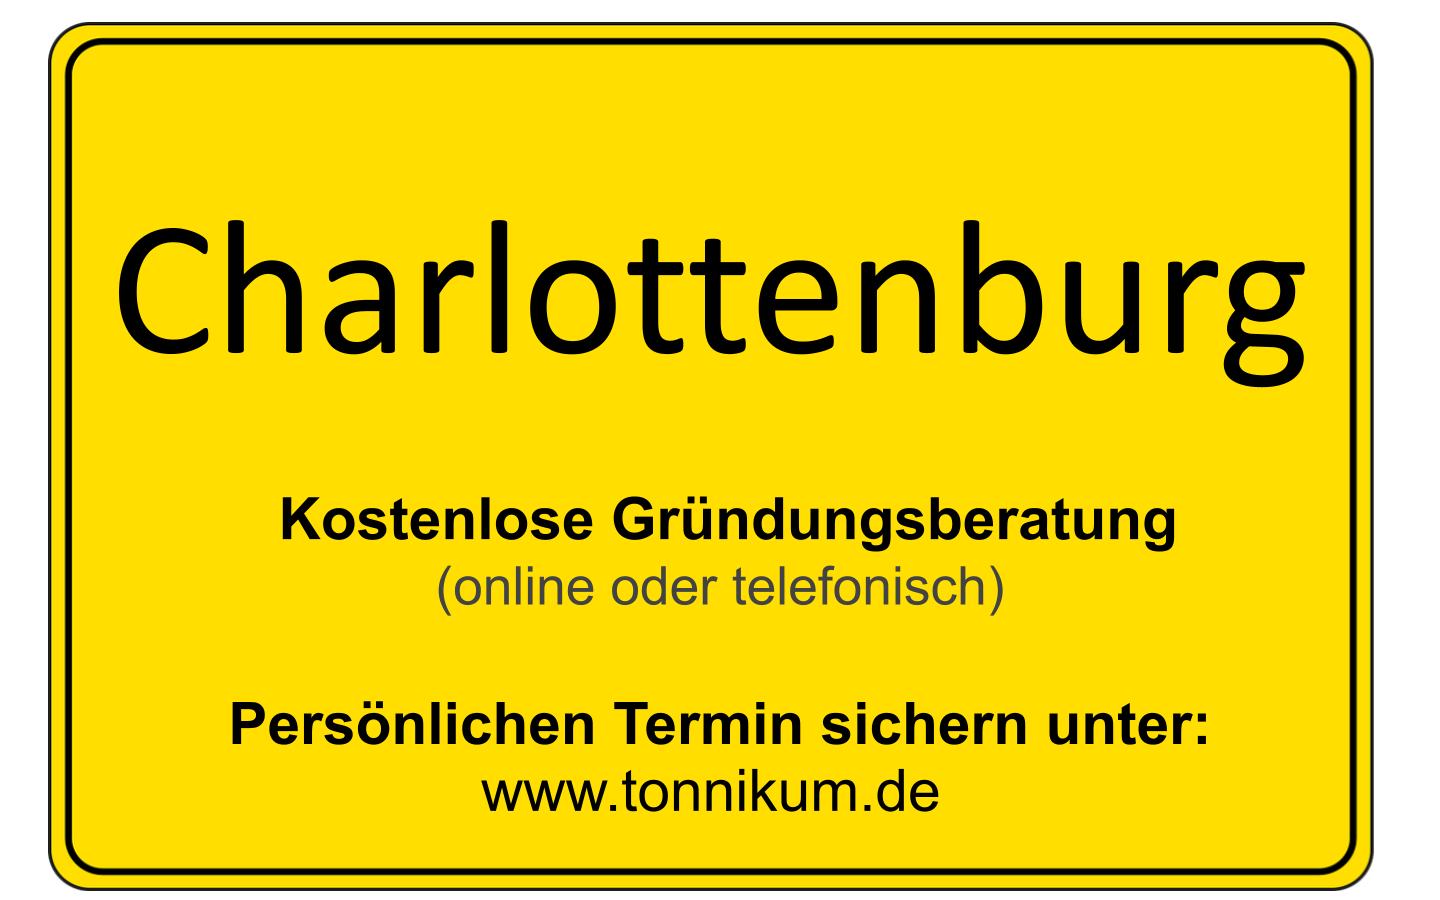 Charlottenburg-Wilmersdorf Existenzgründungsberatung - kostenloses Erstgespräch